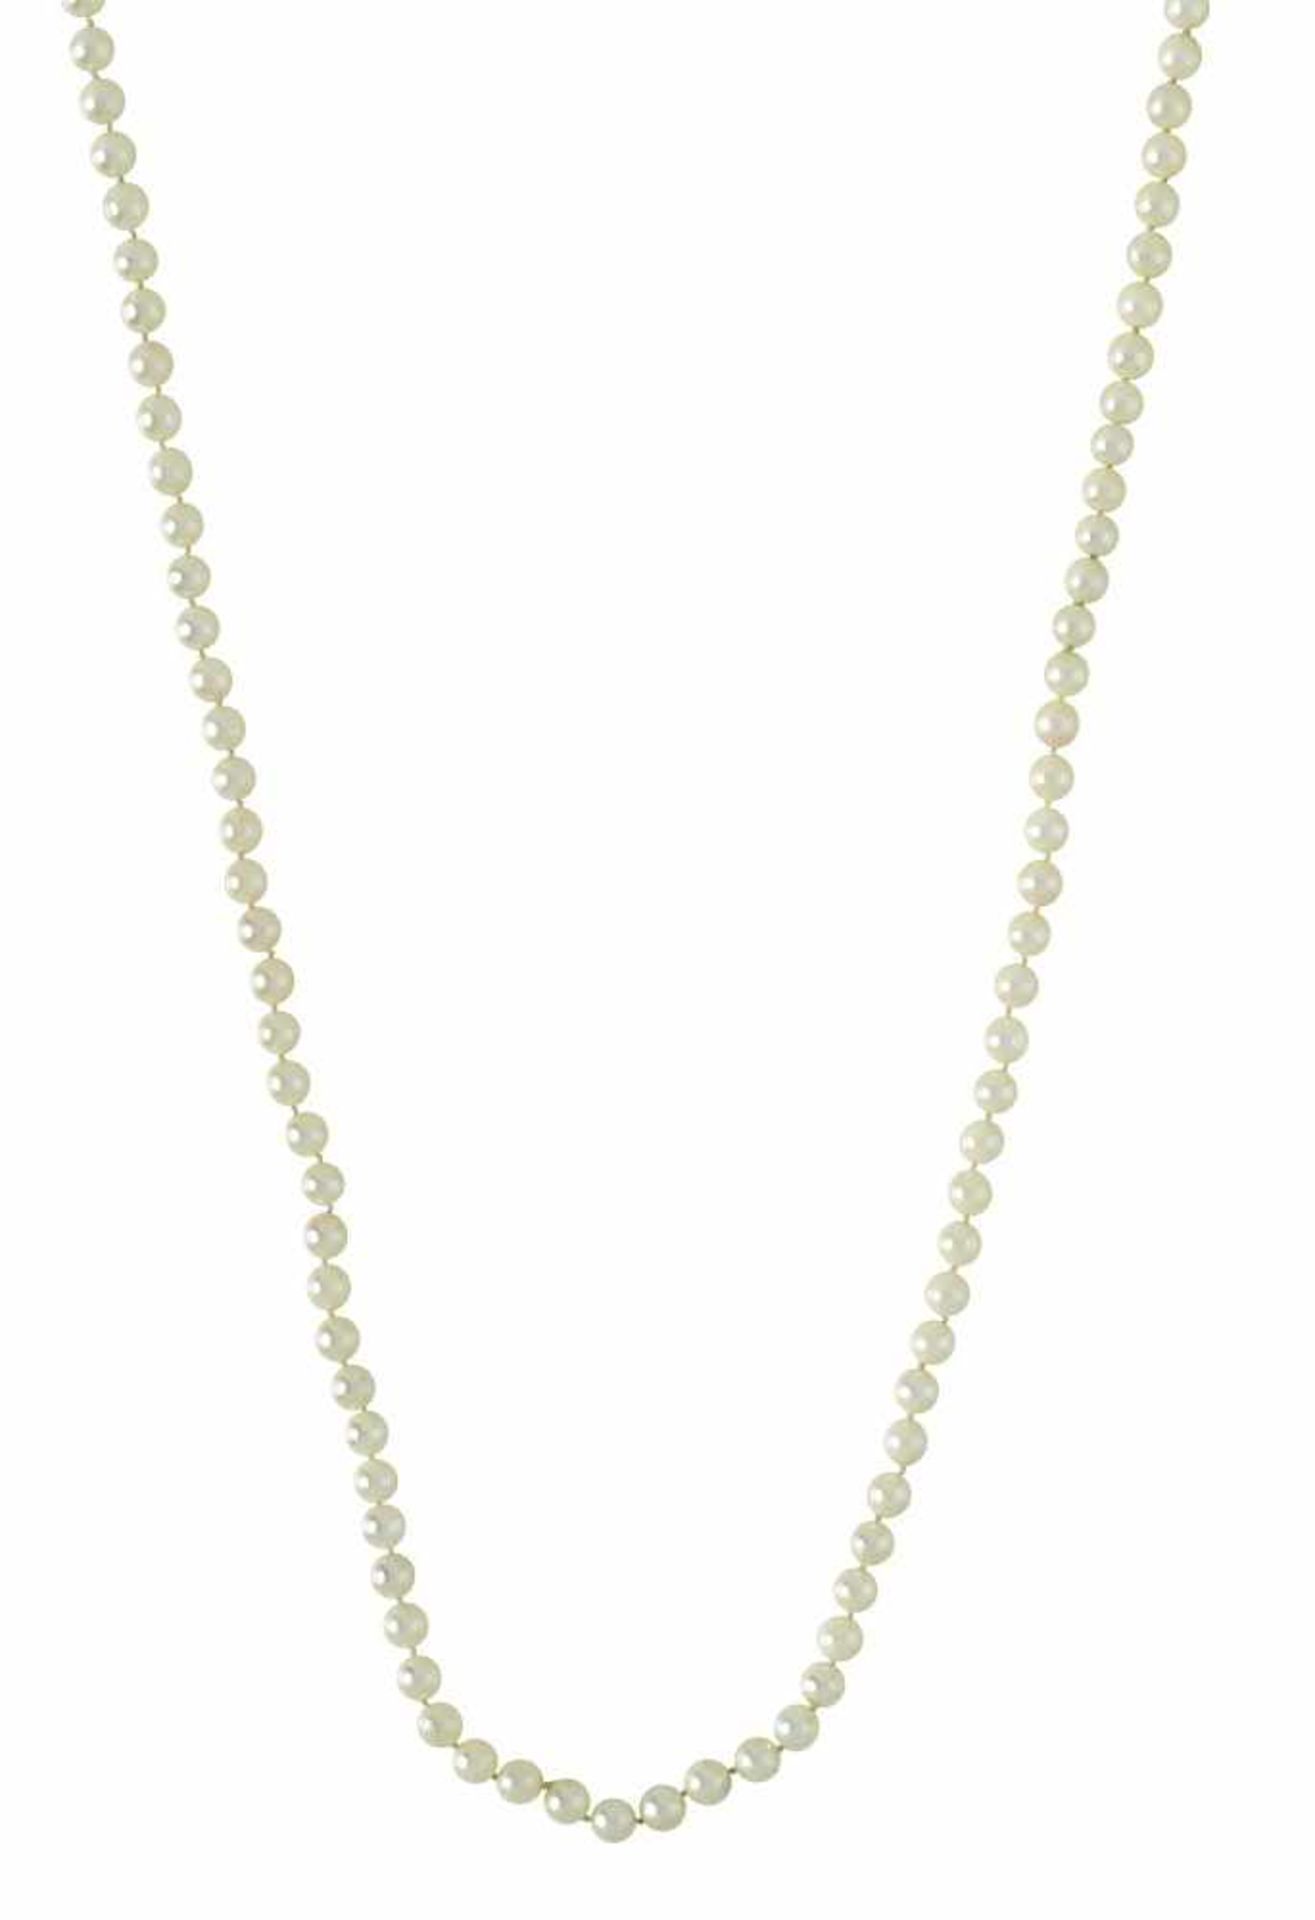 Lange ZuchtperlenketteLeicht cremefarbene Akoja-Zuchtperlen, Ø der Perlen ca. 6,2 mm. Endlos